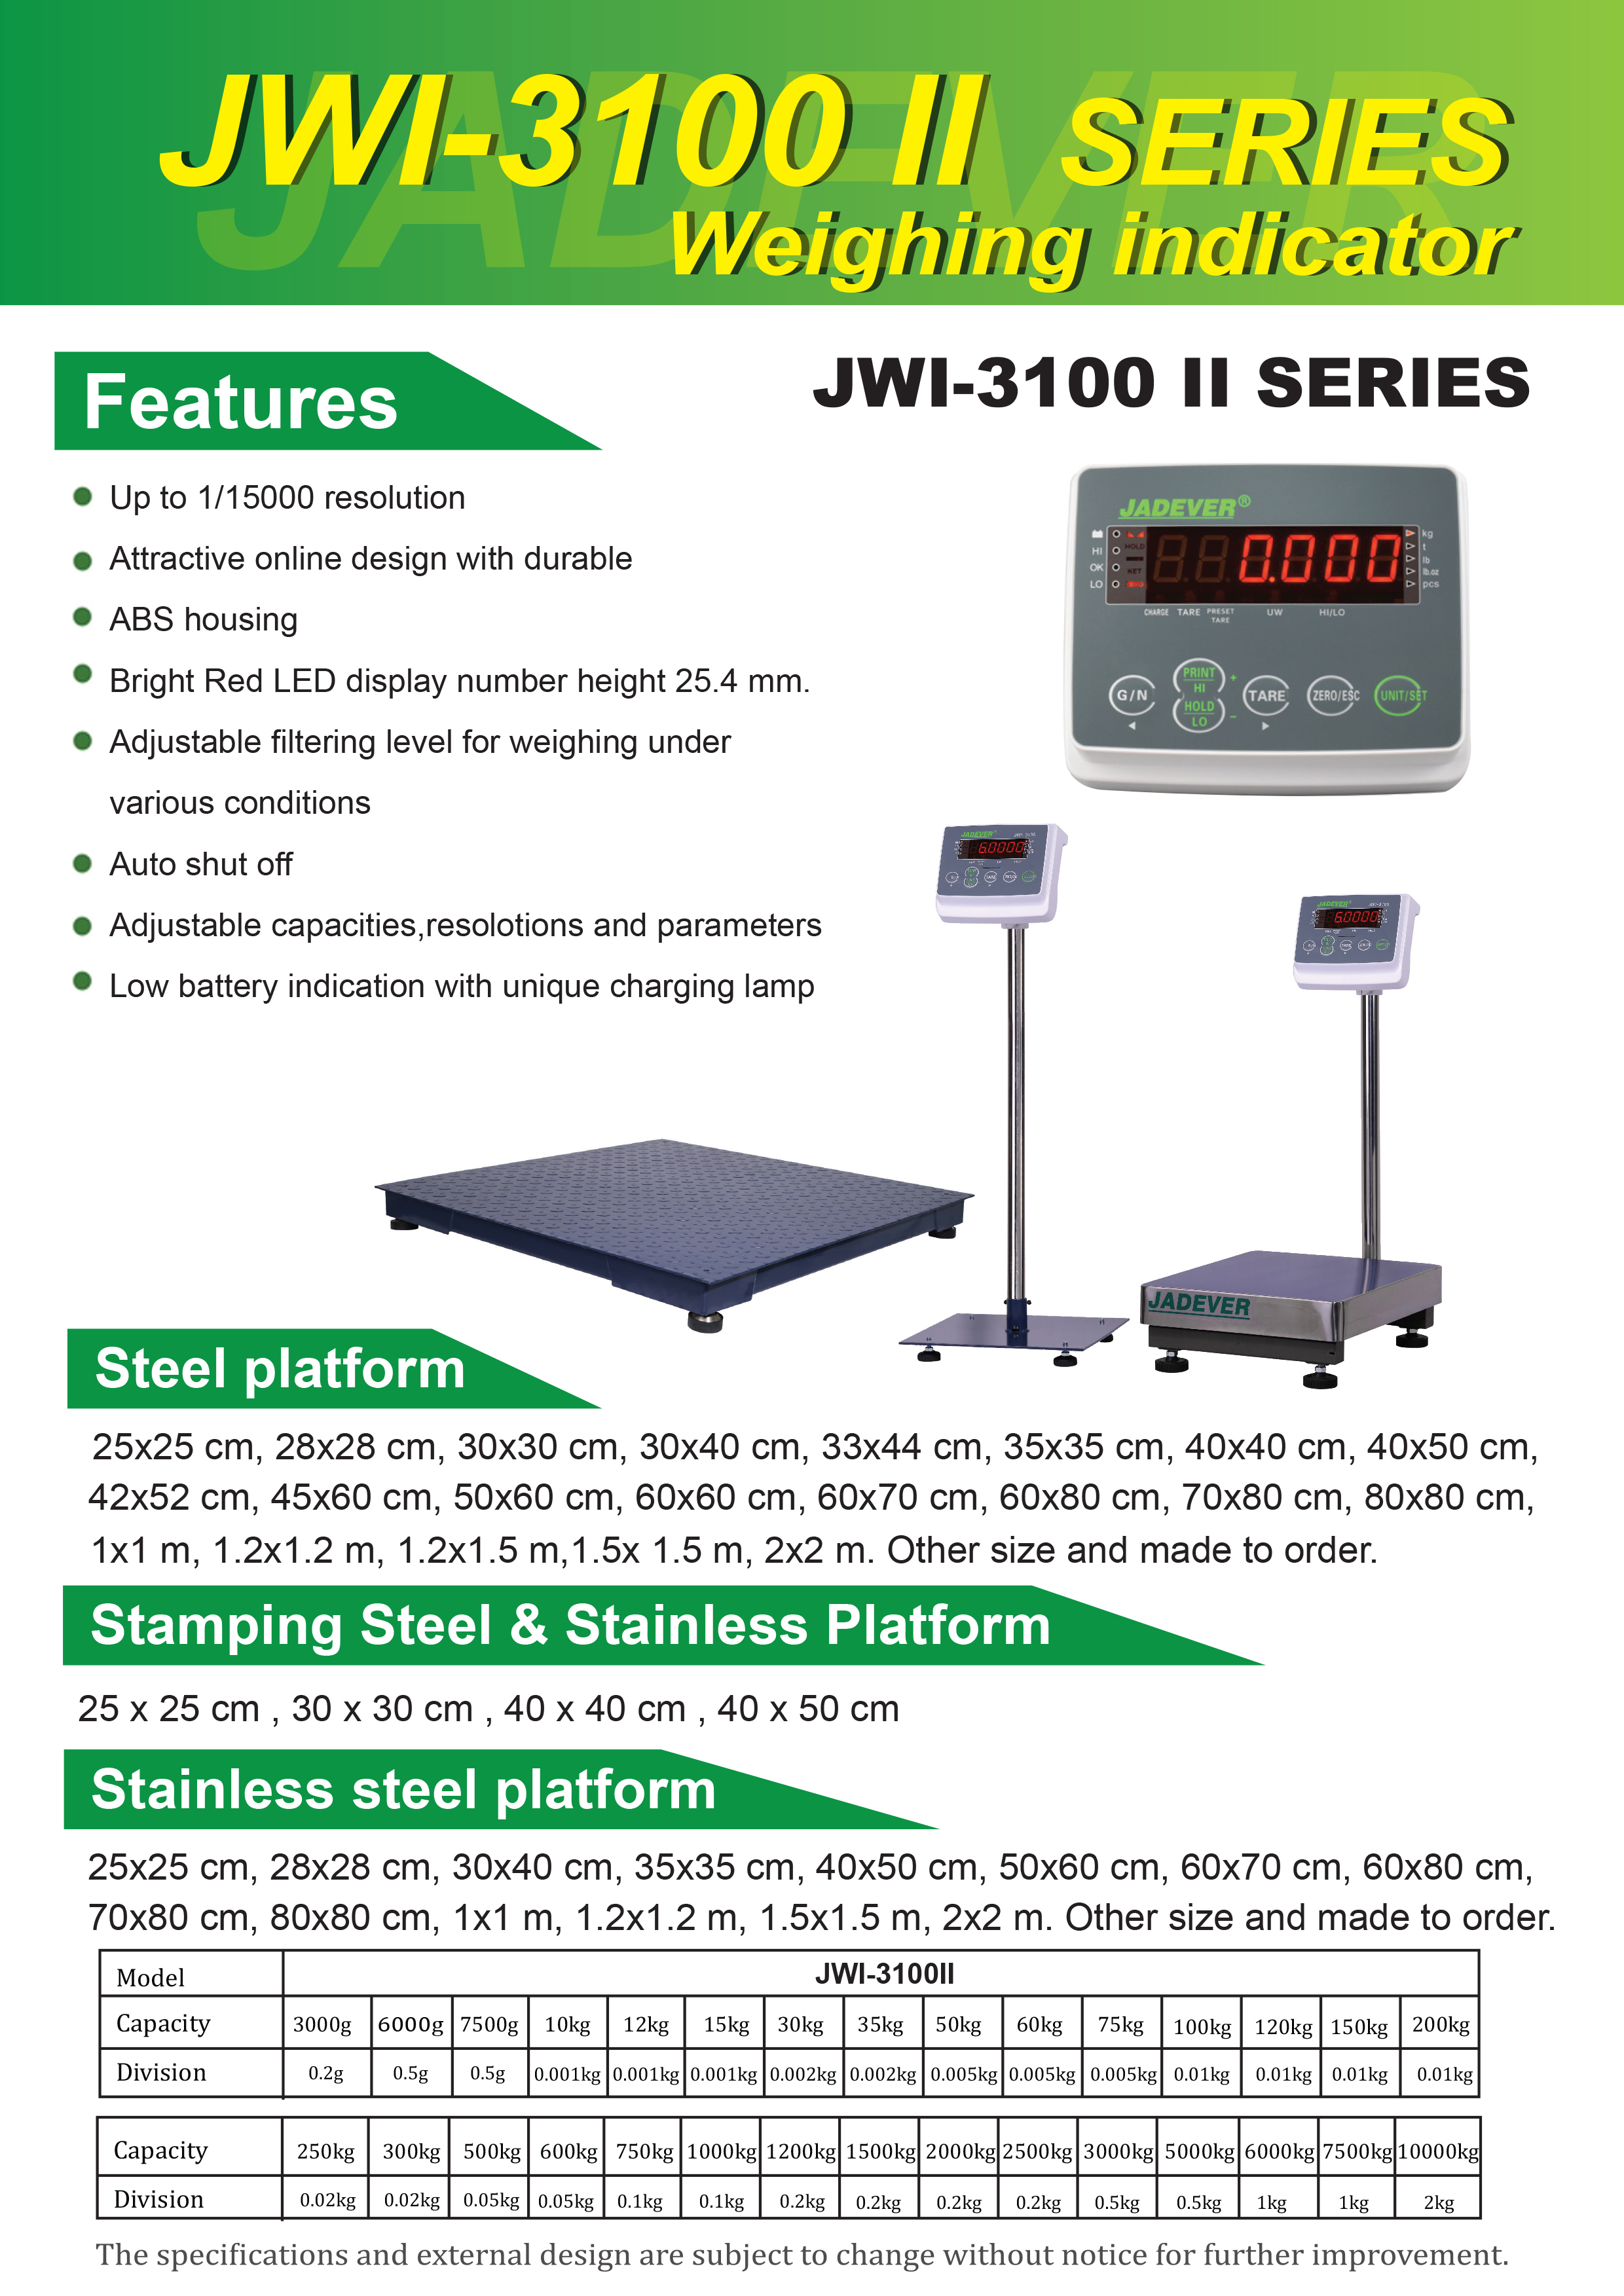 JWI-3100 II